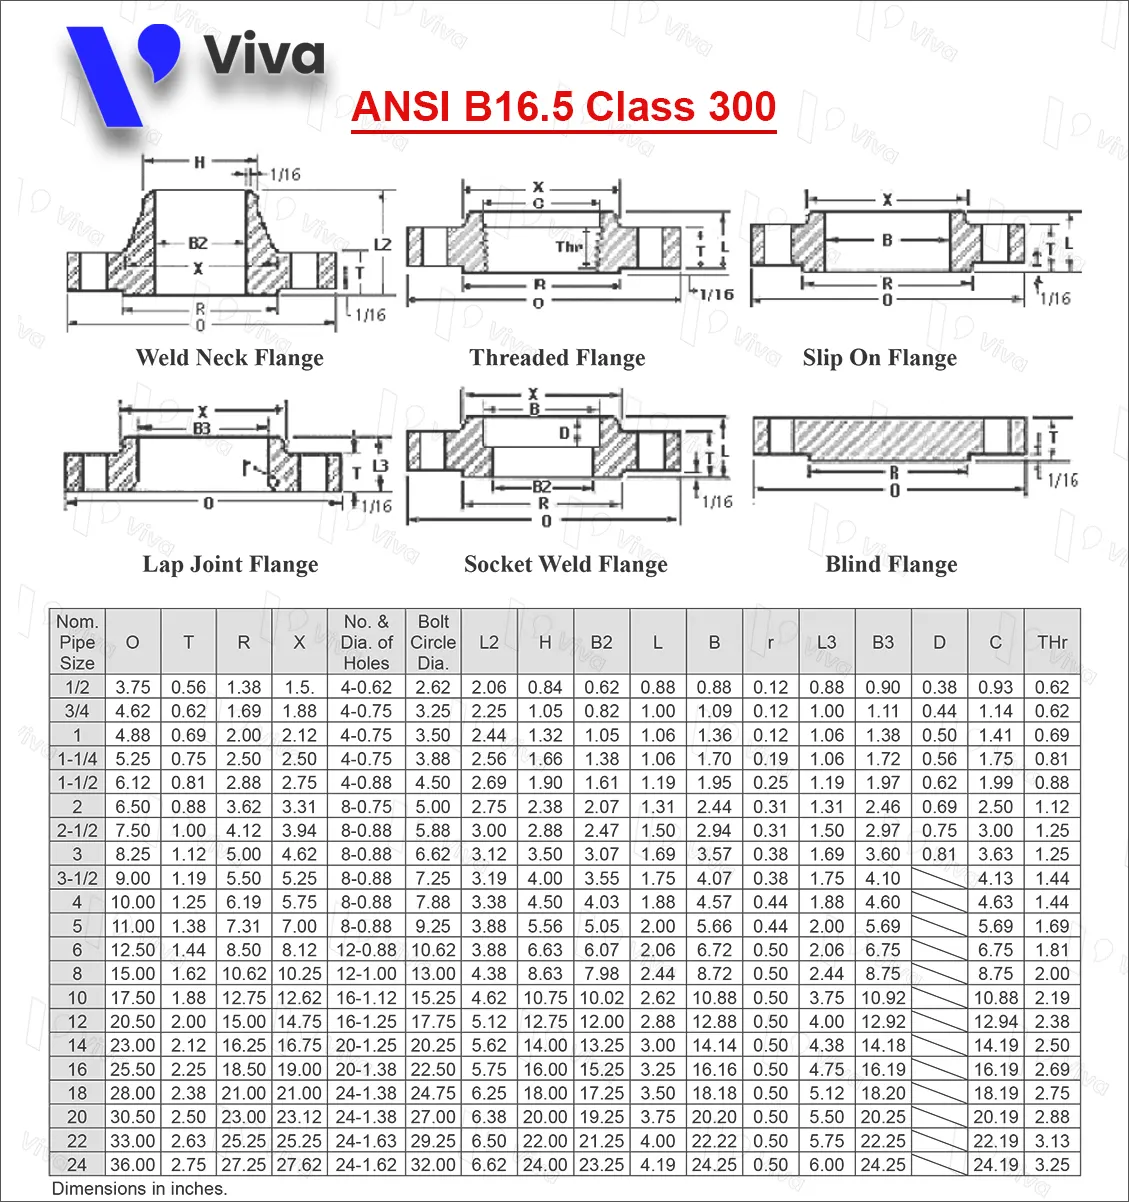 Bảng tra tiêu chuẩn mặt bích ANSI B16.5 Class 300